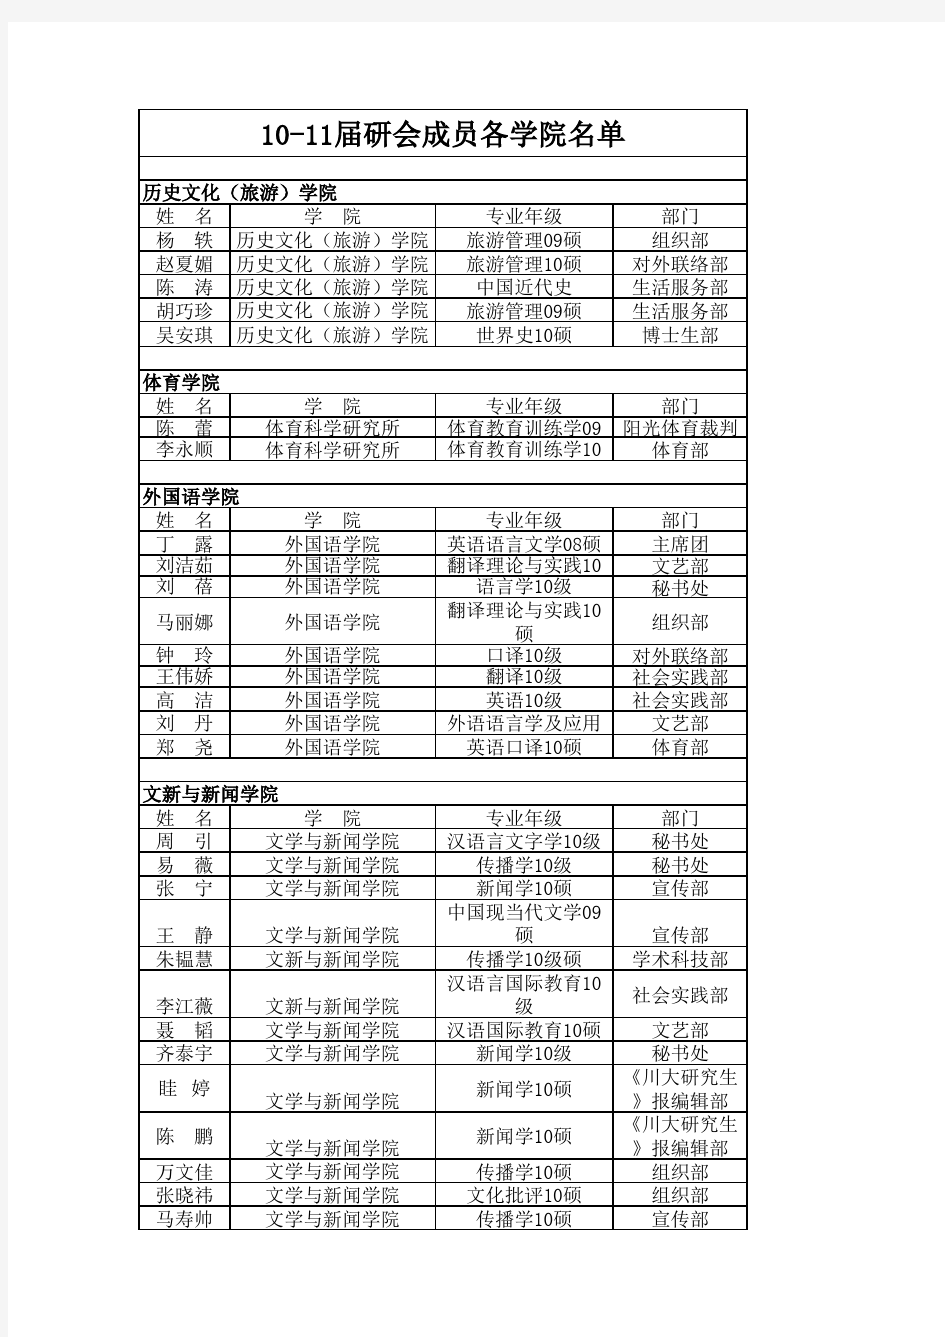 四川大学2010年-2011年研会成员学院名单